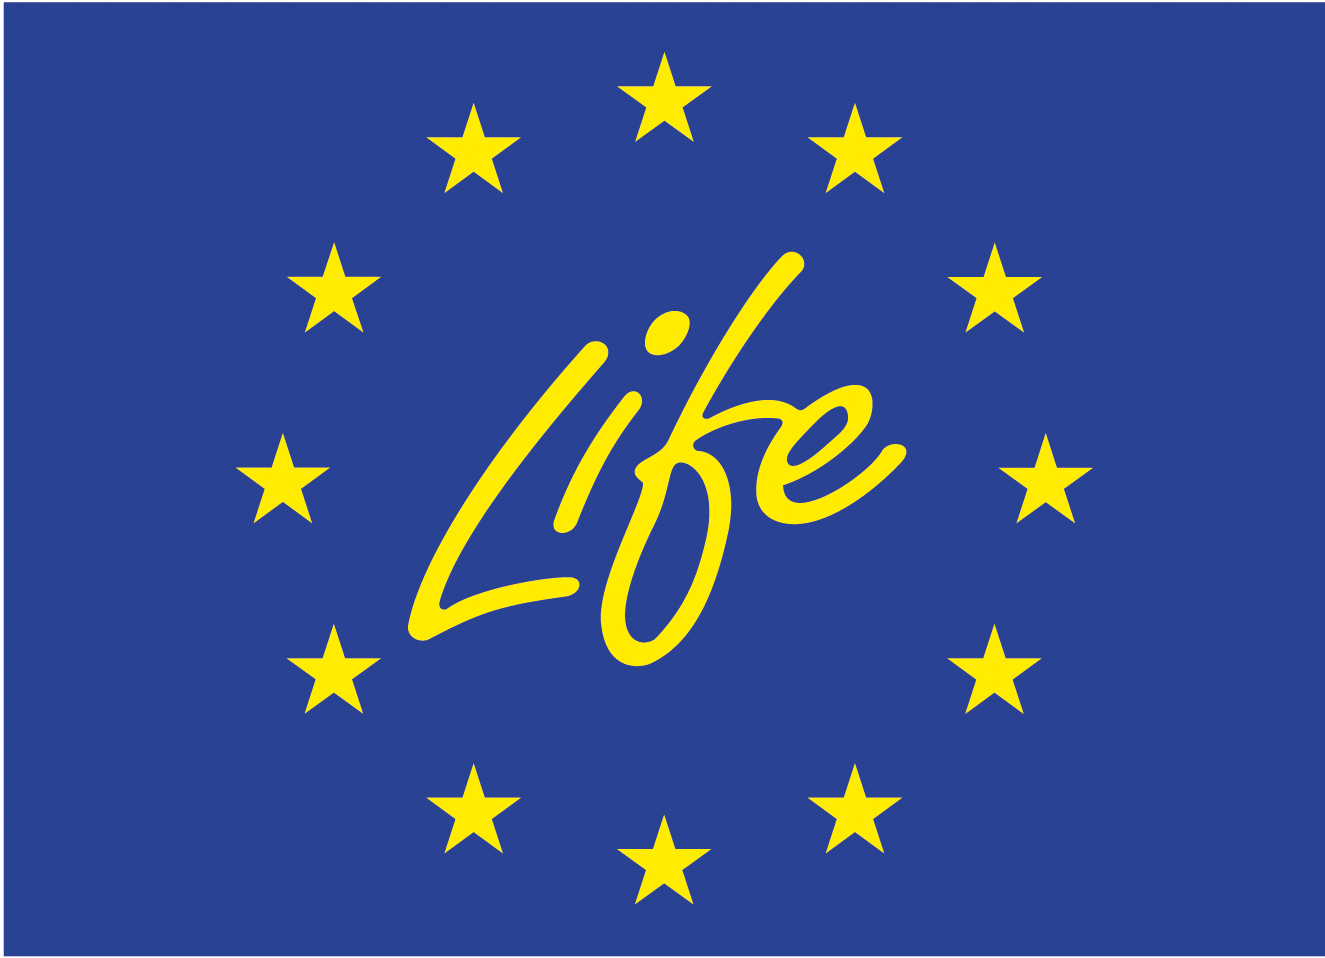 Il logo del programma europeo LIFE con alcune stelle dorate su sfondo blu